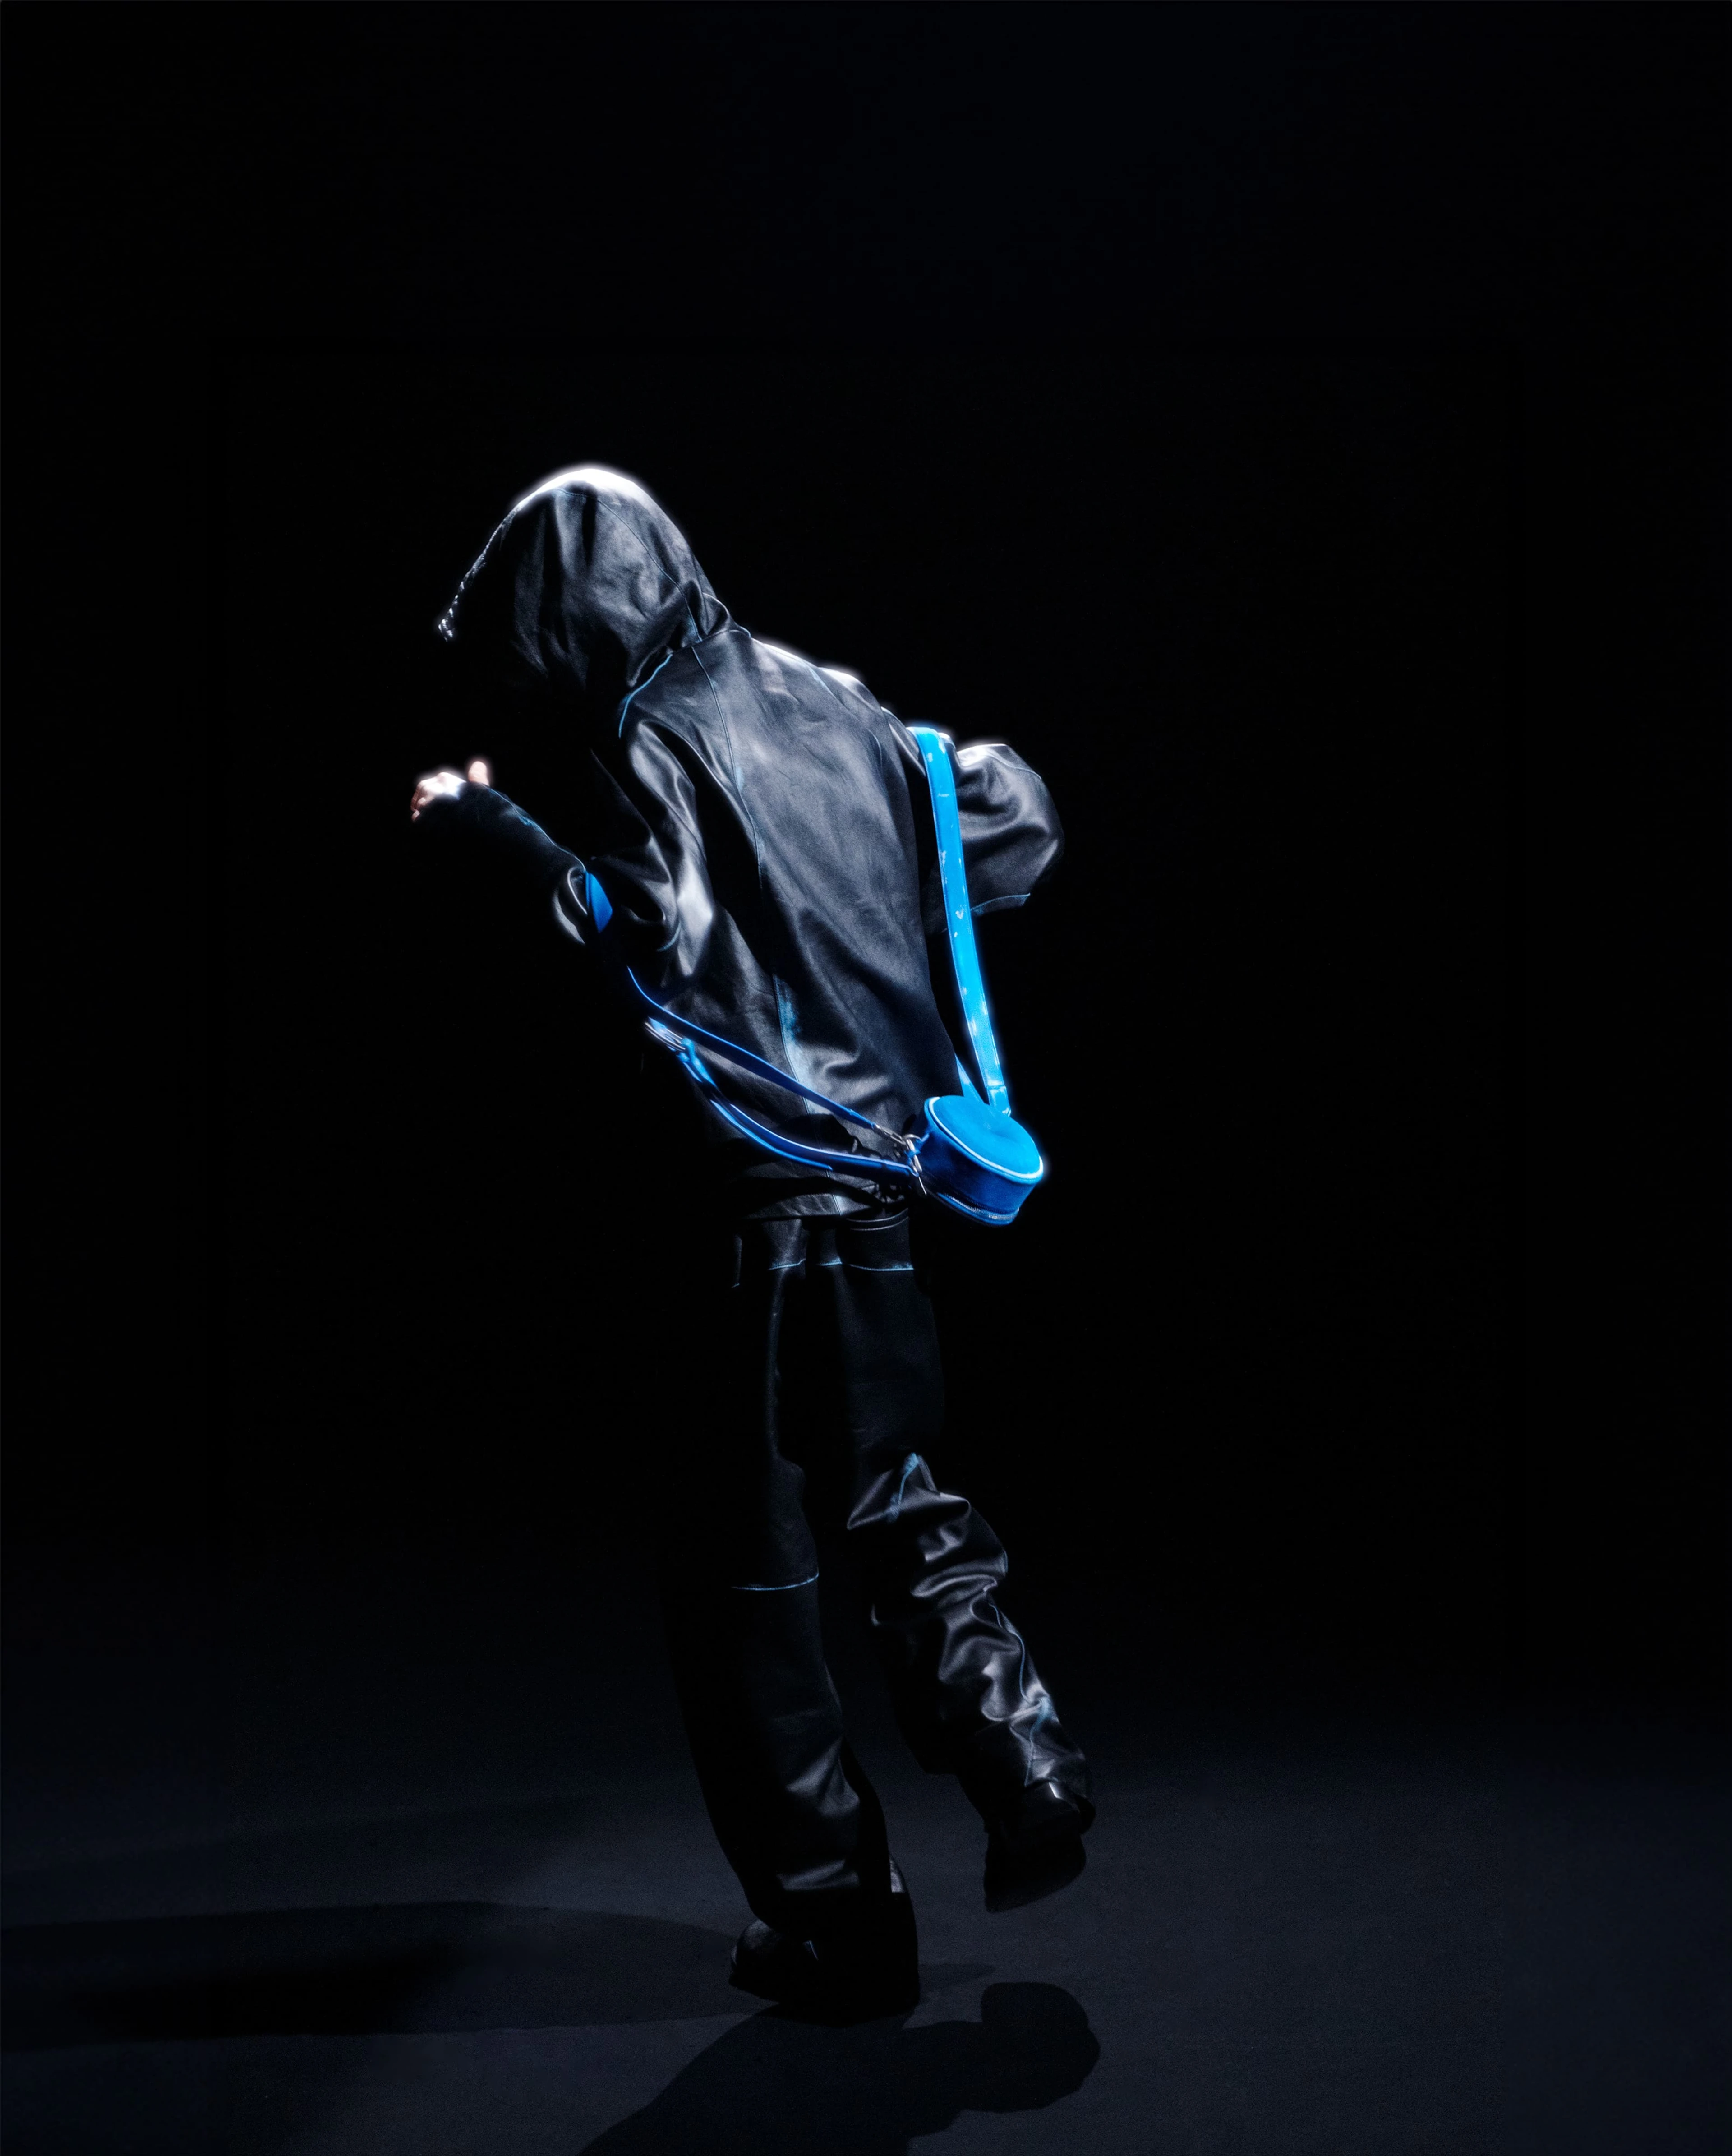 Model wearing Ader Error speaker bag on his back while dancing